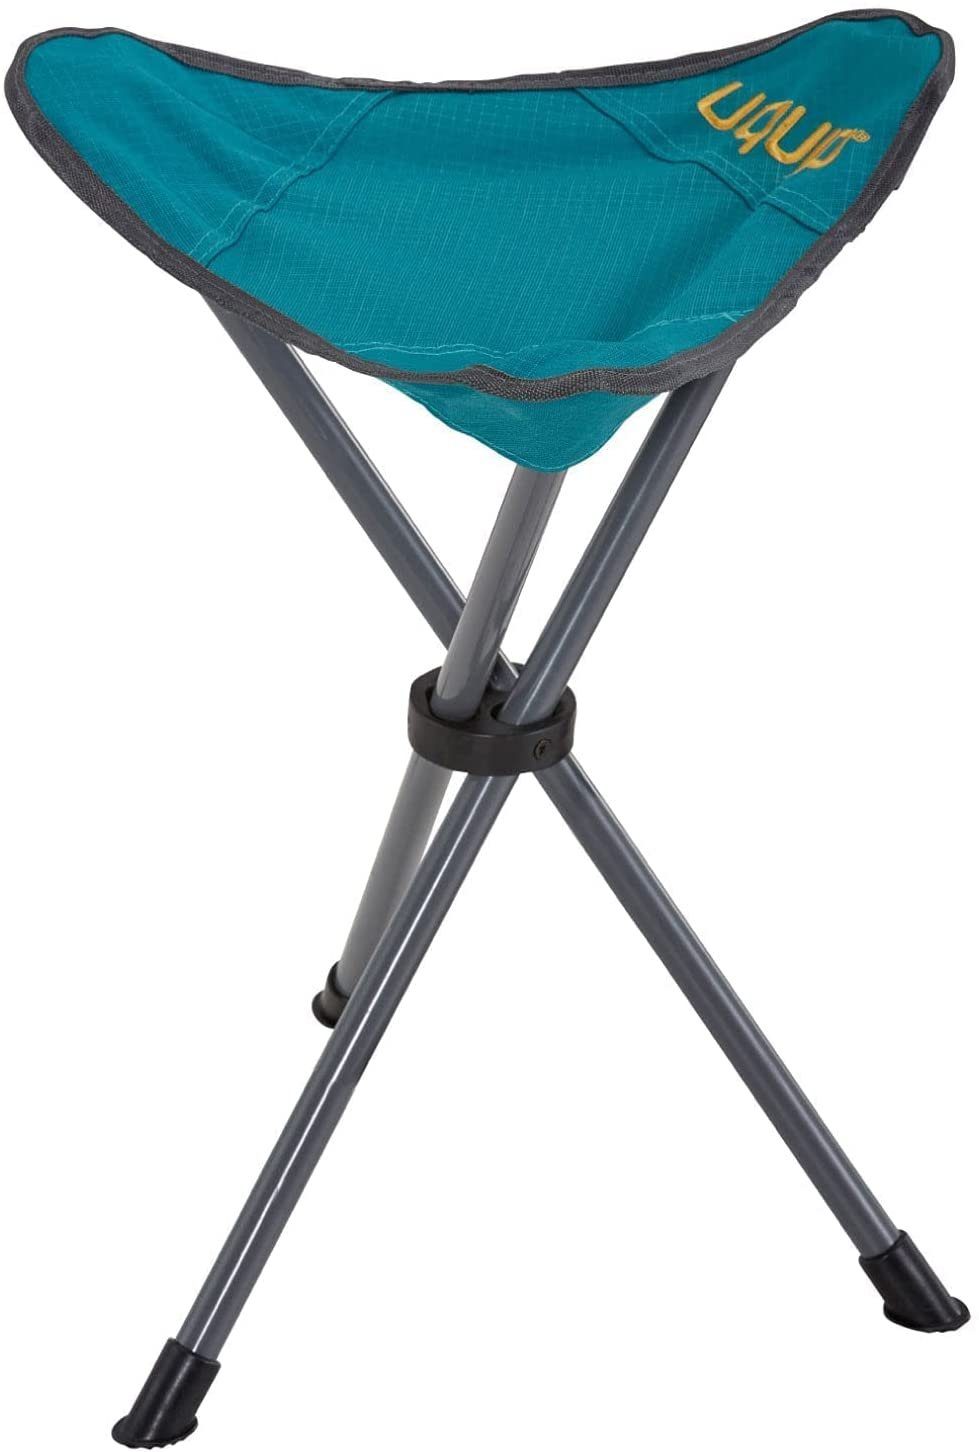 UQUIP Campinghocker Darcy XL - faltbar, stabil, leicht - für Camping, Jagd,  Outdoor, besonders hoher Sitz für extra Komfort